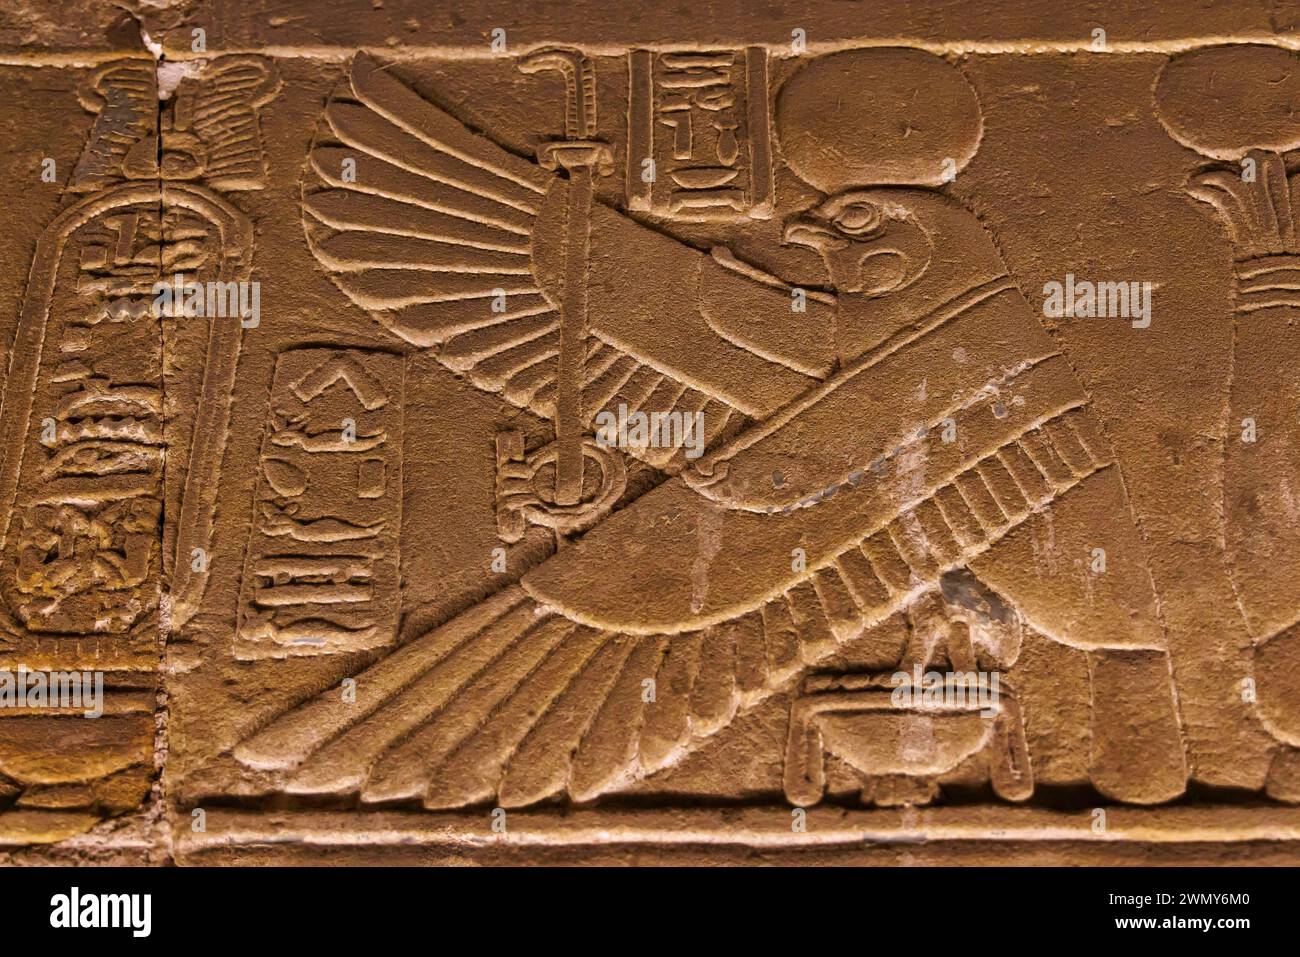 Ägypten, Qena, Dendera, pharaonische Tempel in Oberägypten aus ptolemäischer und römischer Zeit, von der UNESCO zum Weltkulturerbe erklärt, Hathor-Tempel, niedriges Relief der Krypta Stockfoto